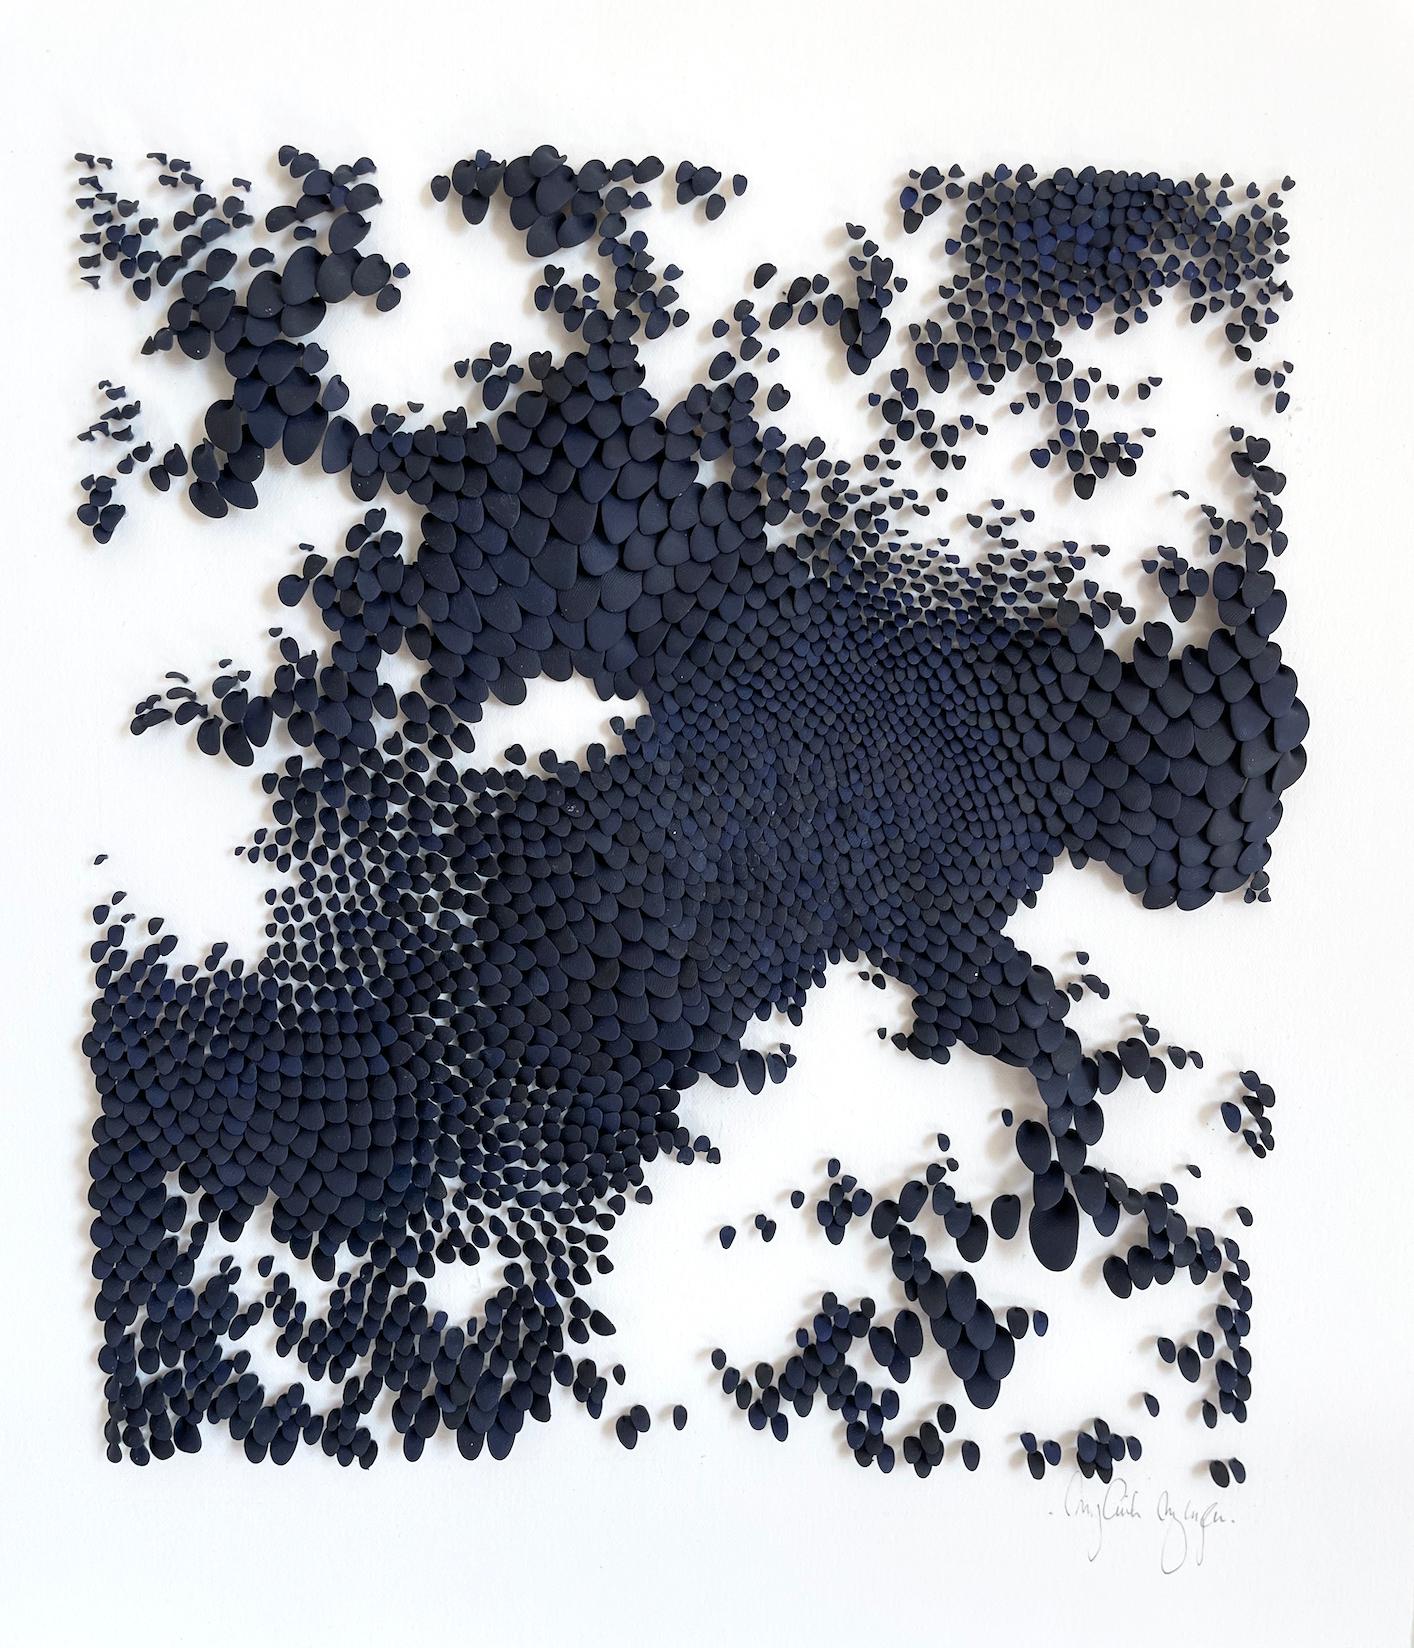 Autumn Night Blue - abstrakte, von der Nature inspirierte Minimal-Collage aus Ton auf Papier